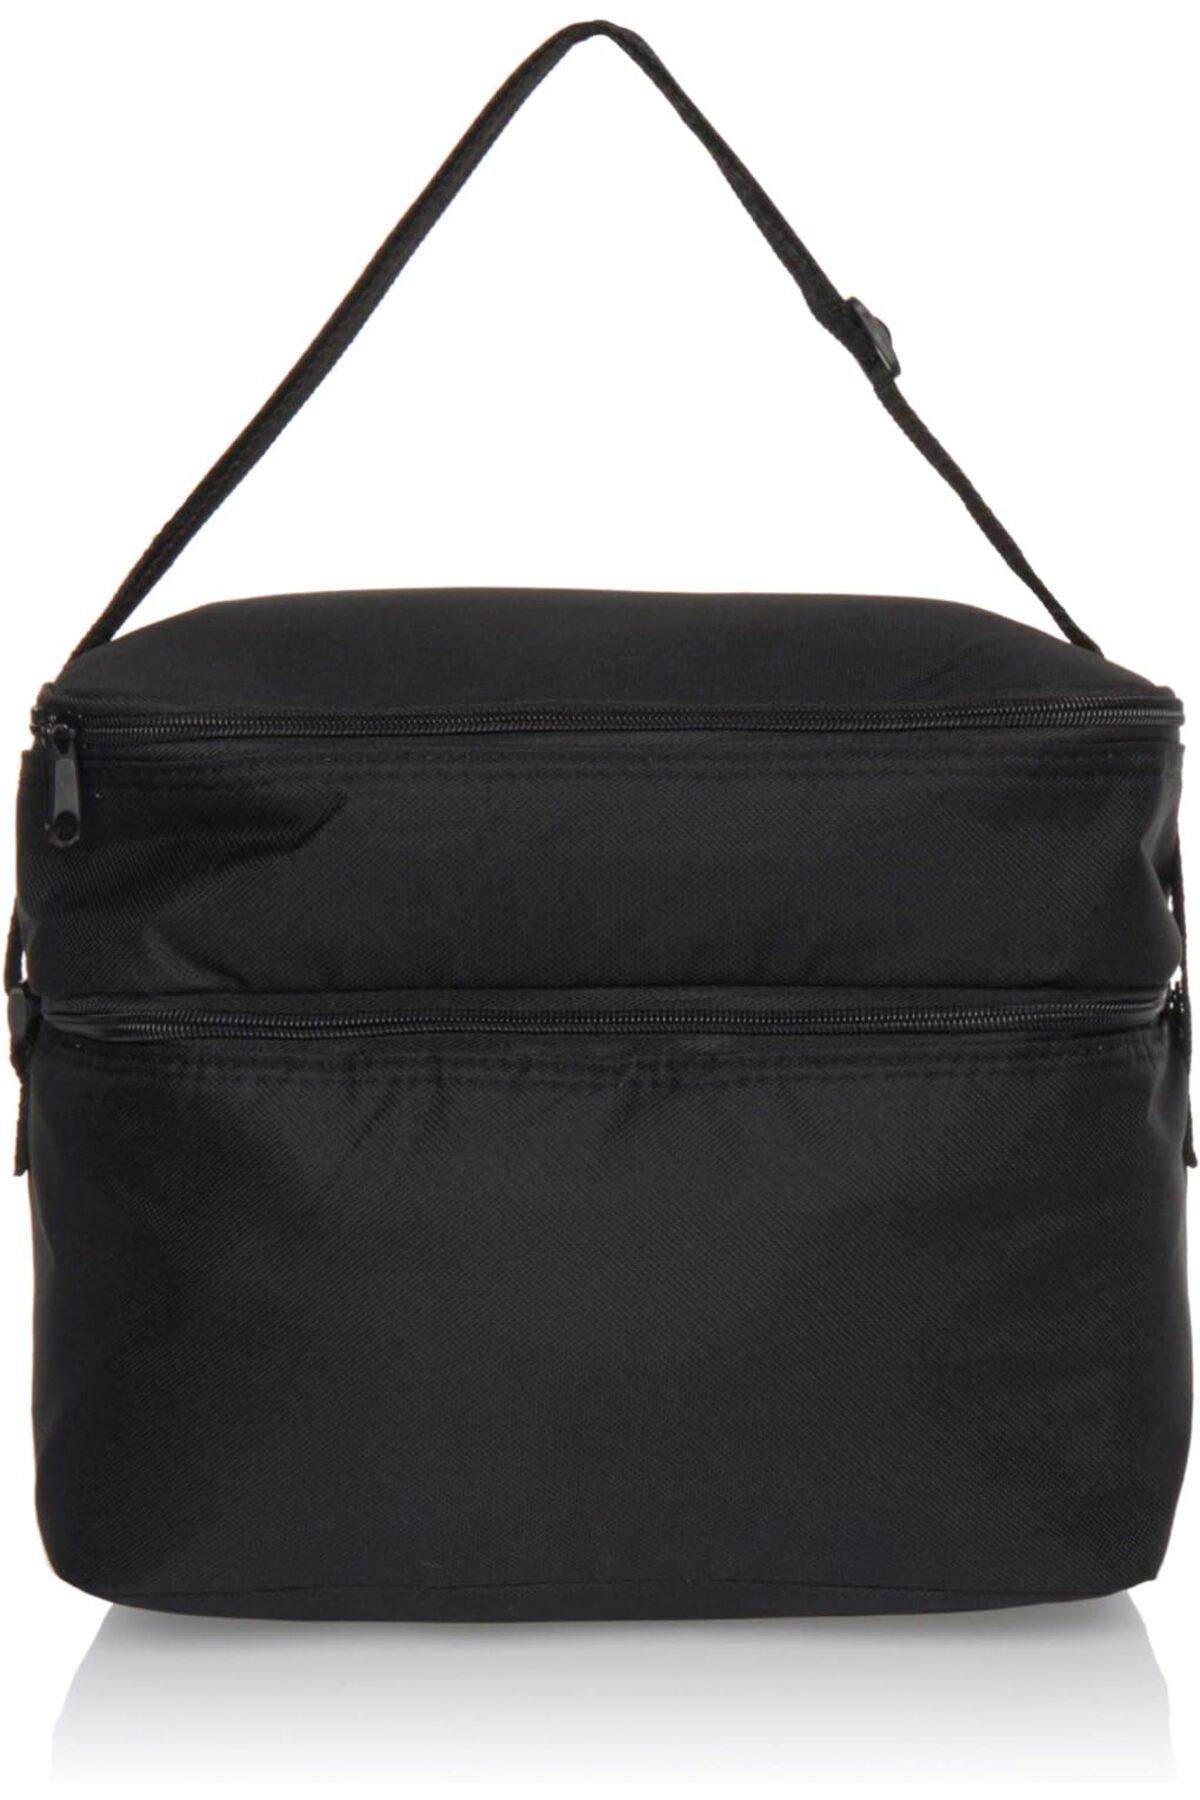 Kaliko Soğutucu Çanta Soğutucu Çanta Cooler Bag Unisex, Siyah, Tek Boy